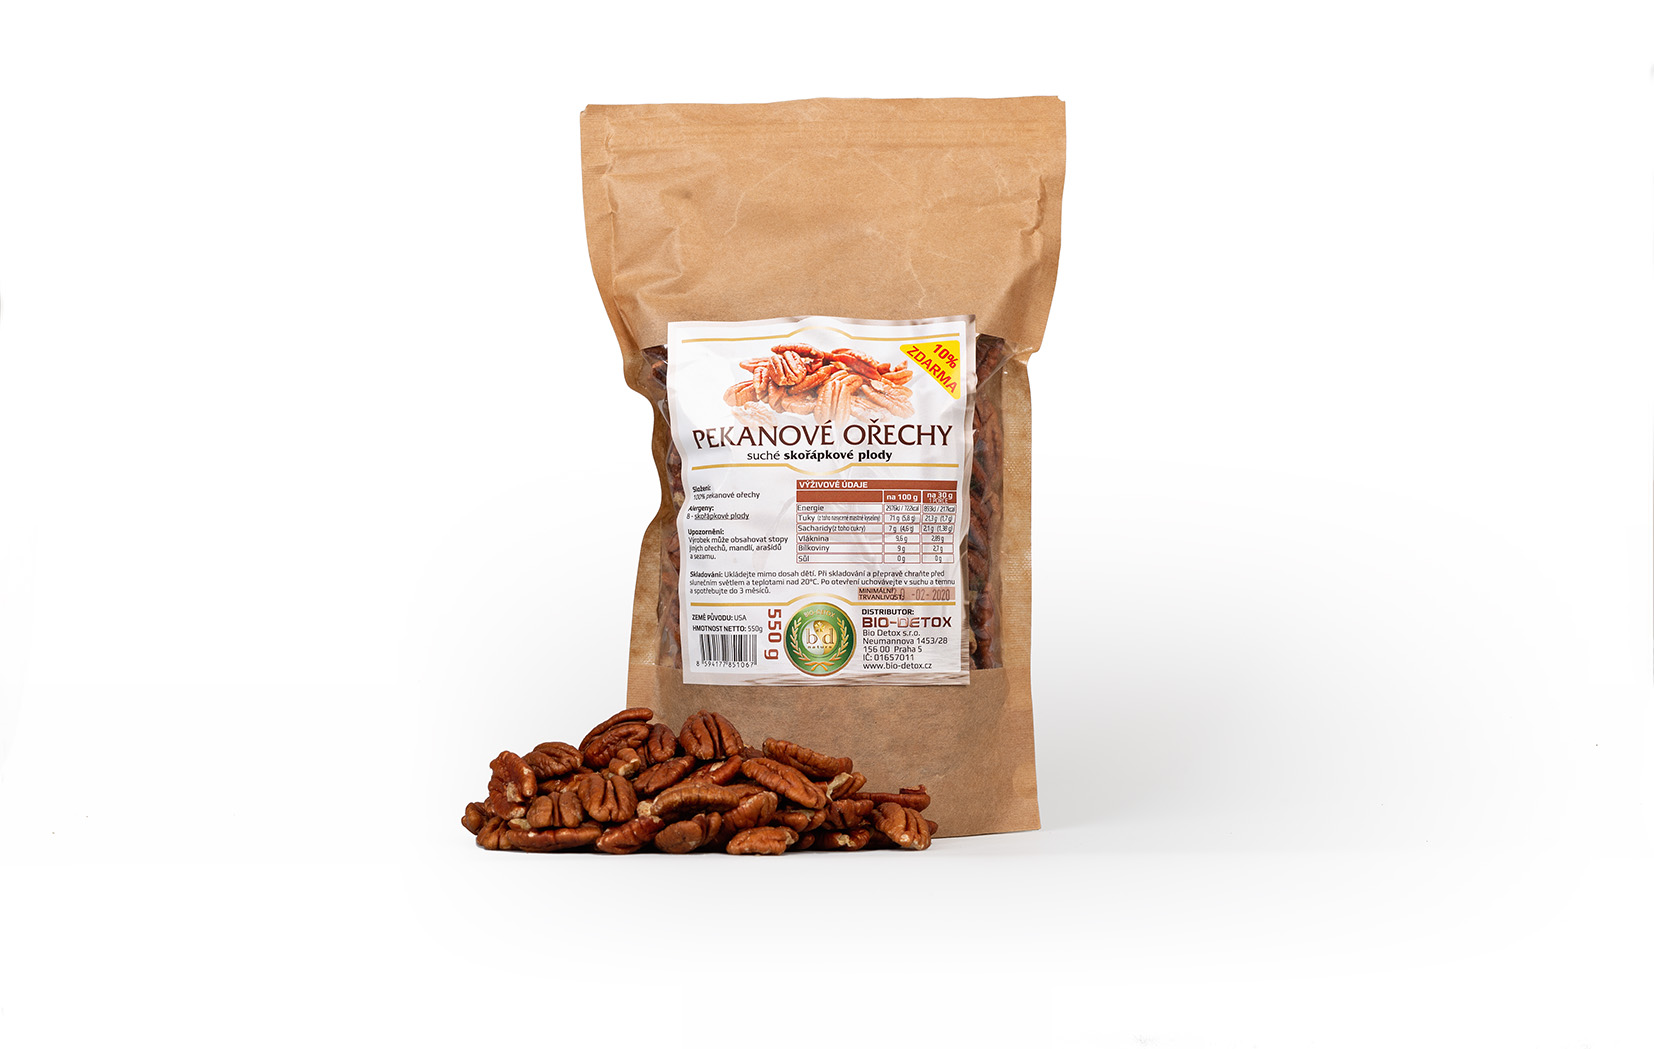 Bio-Detox Pekanové ořechy 500g